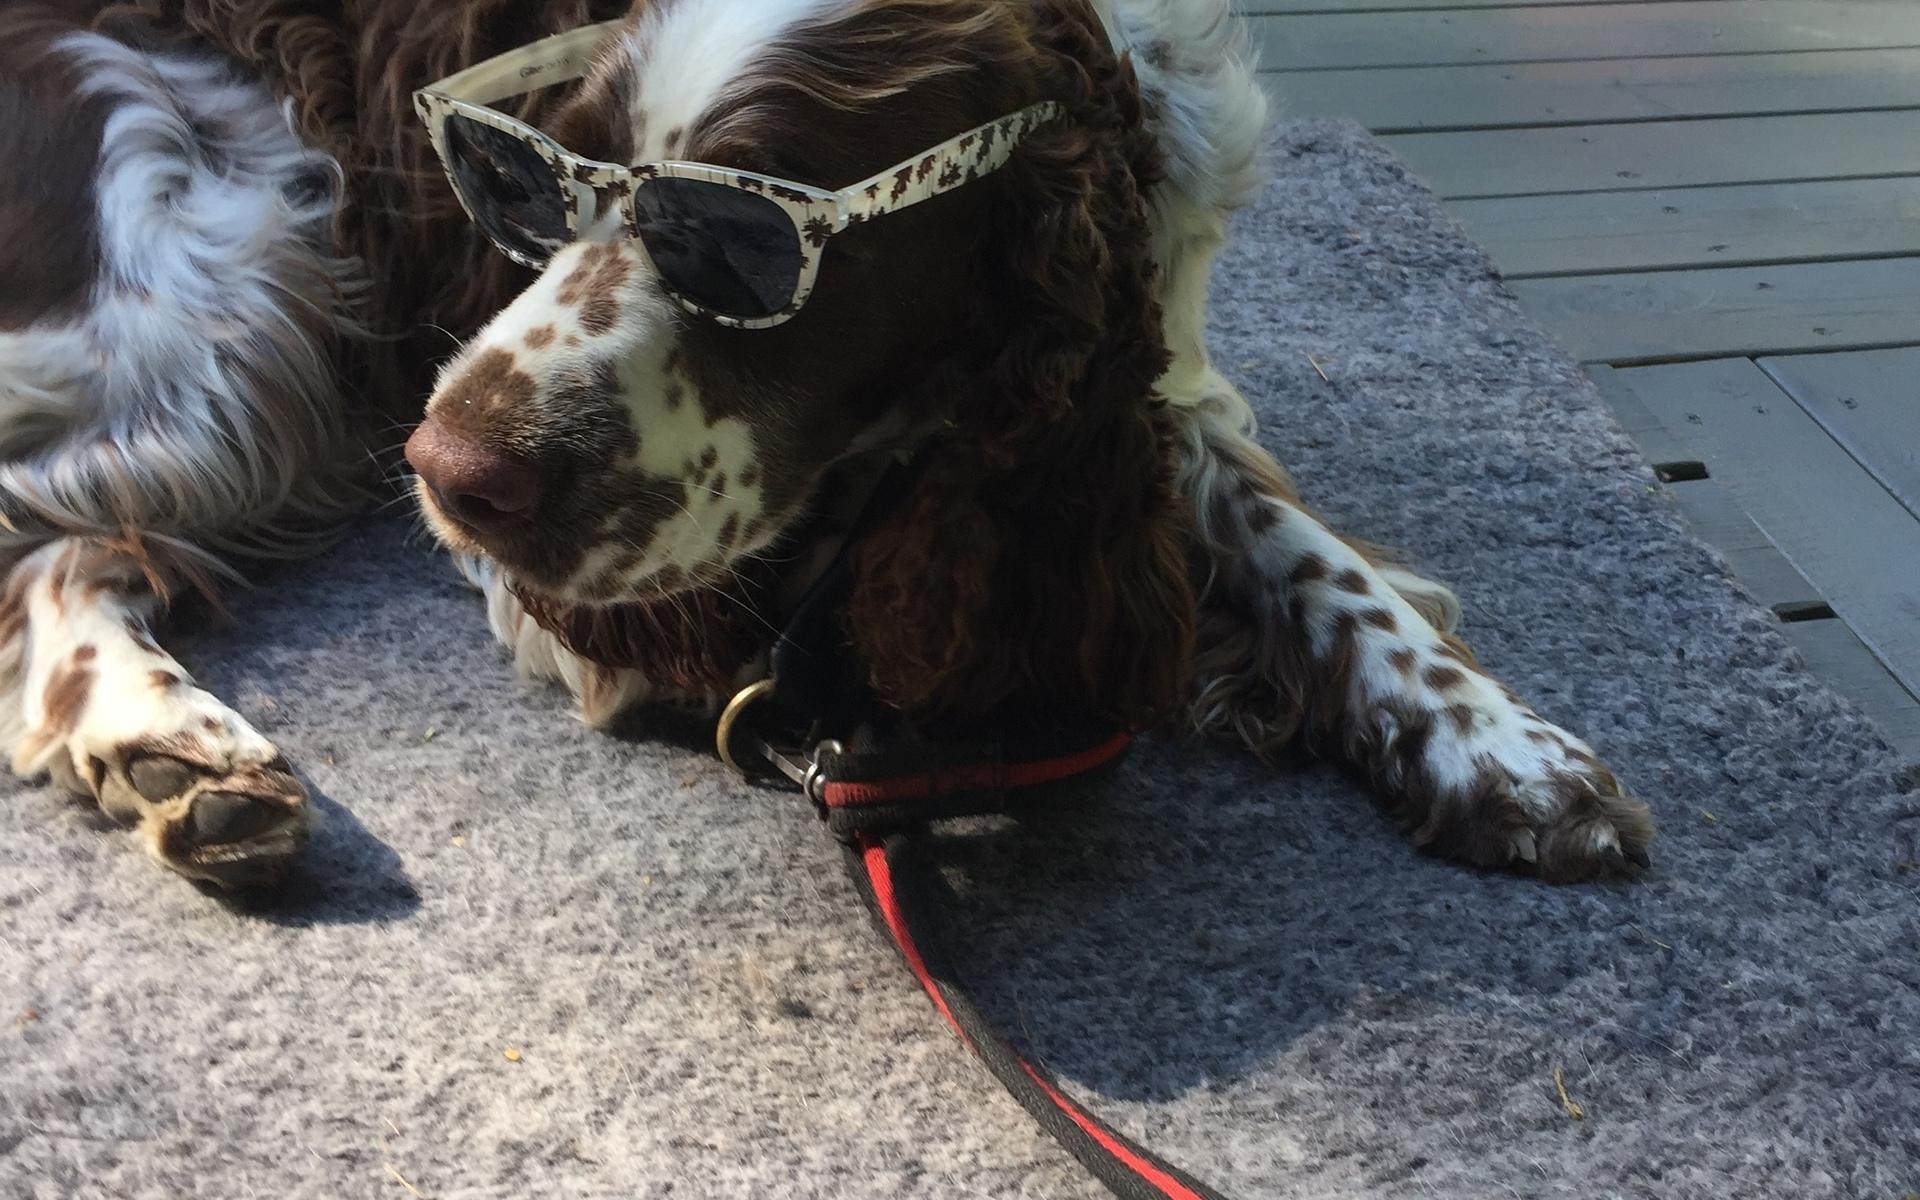 &quot;Jag har tagit den här bilden på min mormor &amp; morfars hund, som heter Pontus. Pontus är väldigt modeintresserad och här poserar han i sina nya och mycket matchande solbrillor&quot;. Bild: Nellie Gebremariam.